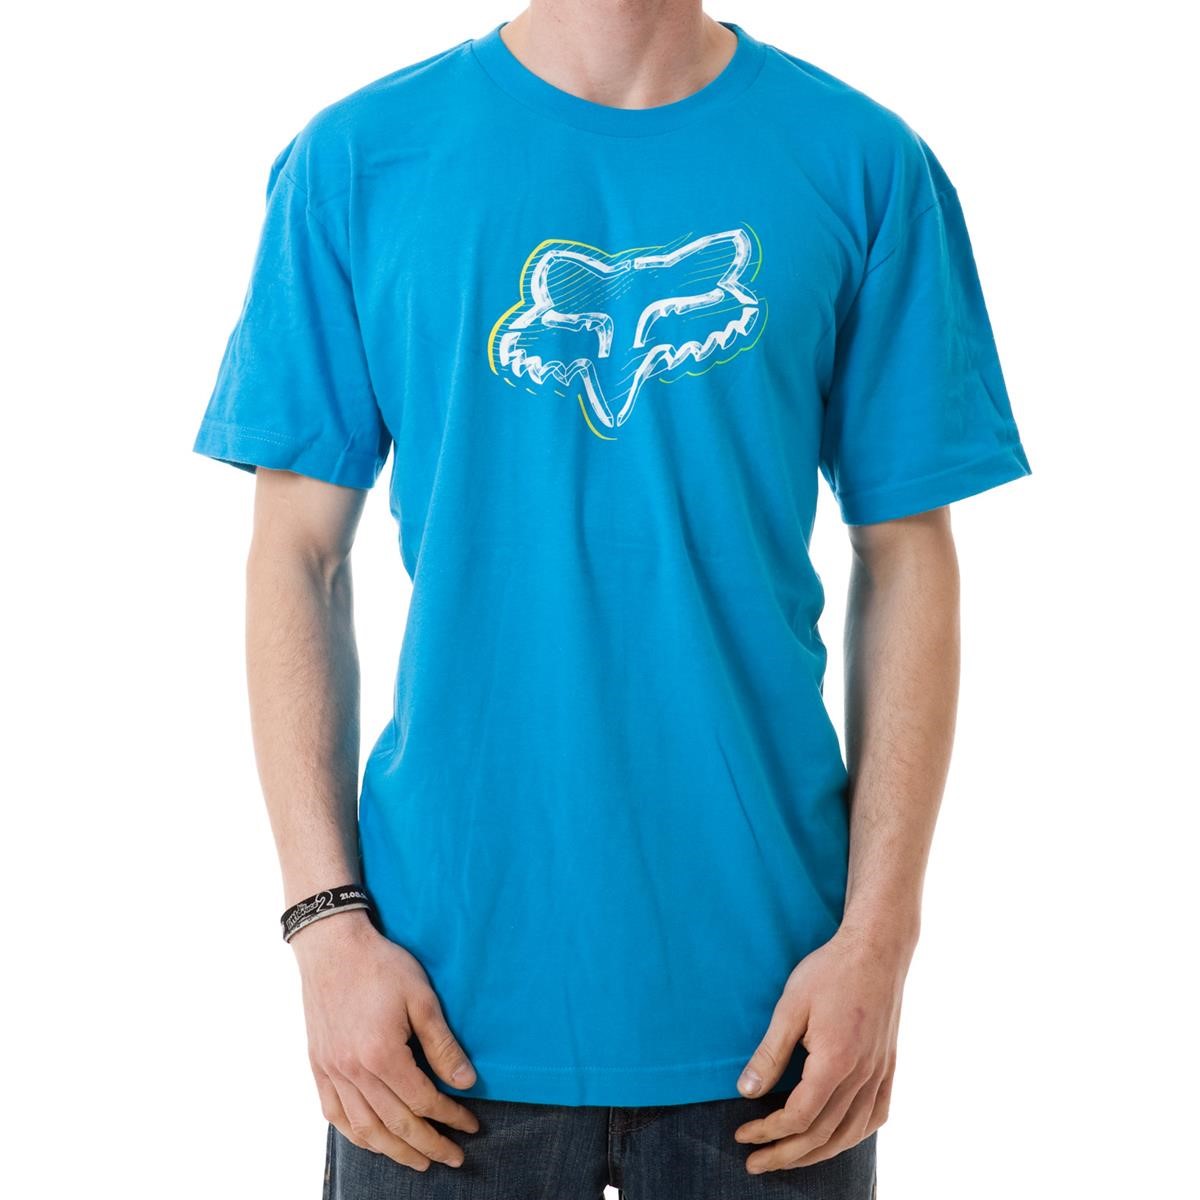 Freizeit/Streetwear Bekleidung-T-Shirts/Polos - Fox T-Shirt Moonlight Electric Blue